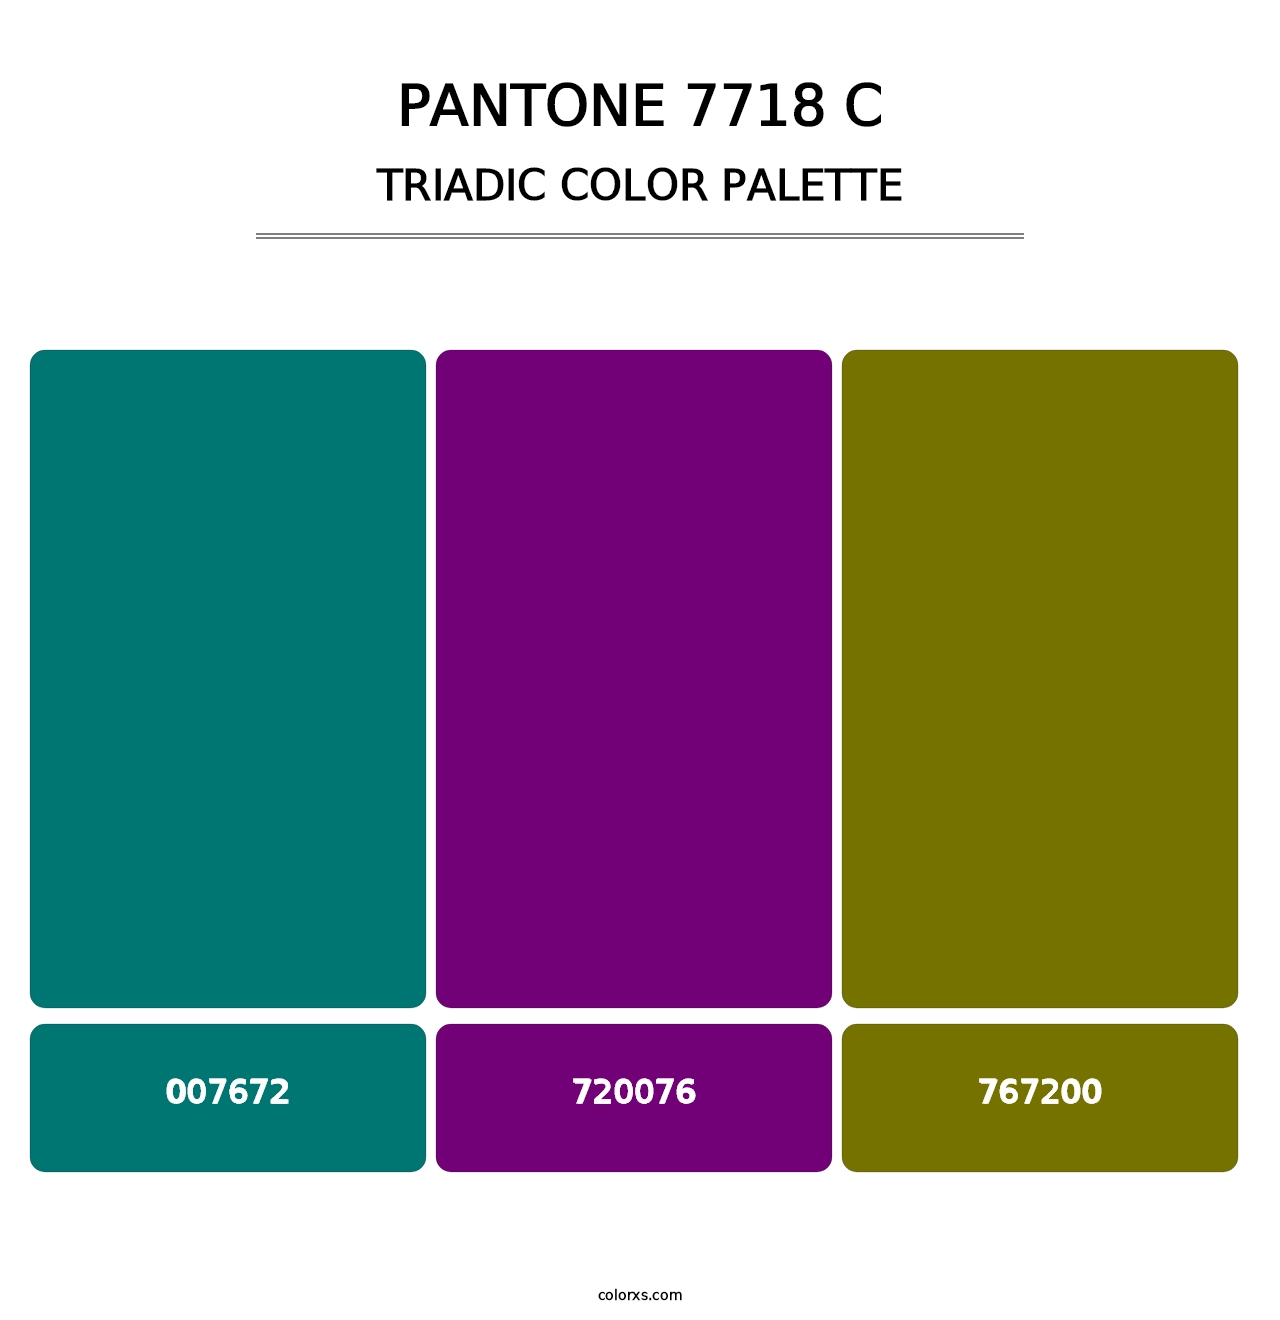 PANTONE 7718 C - Triadic Color Palette